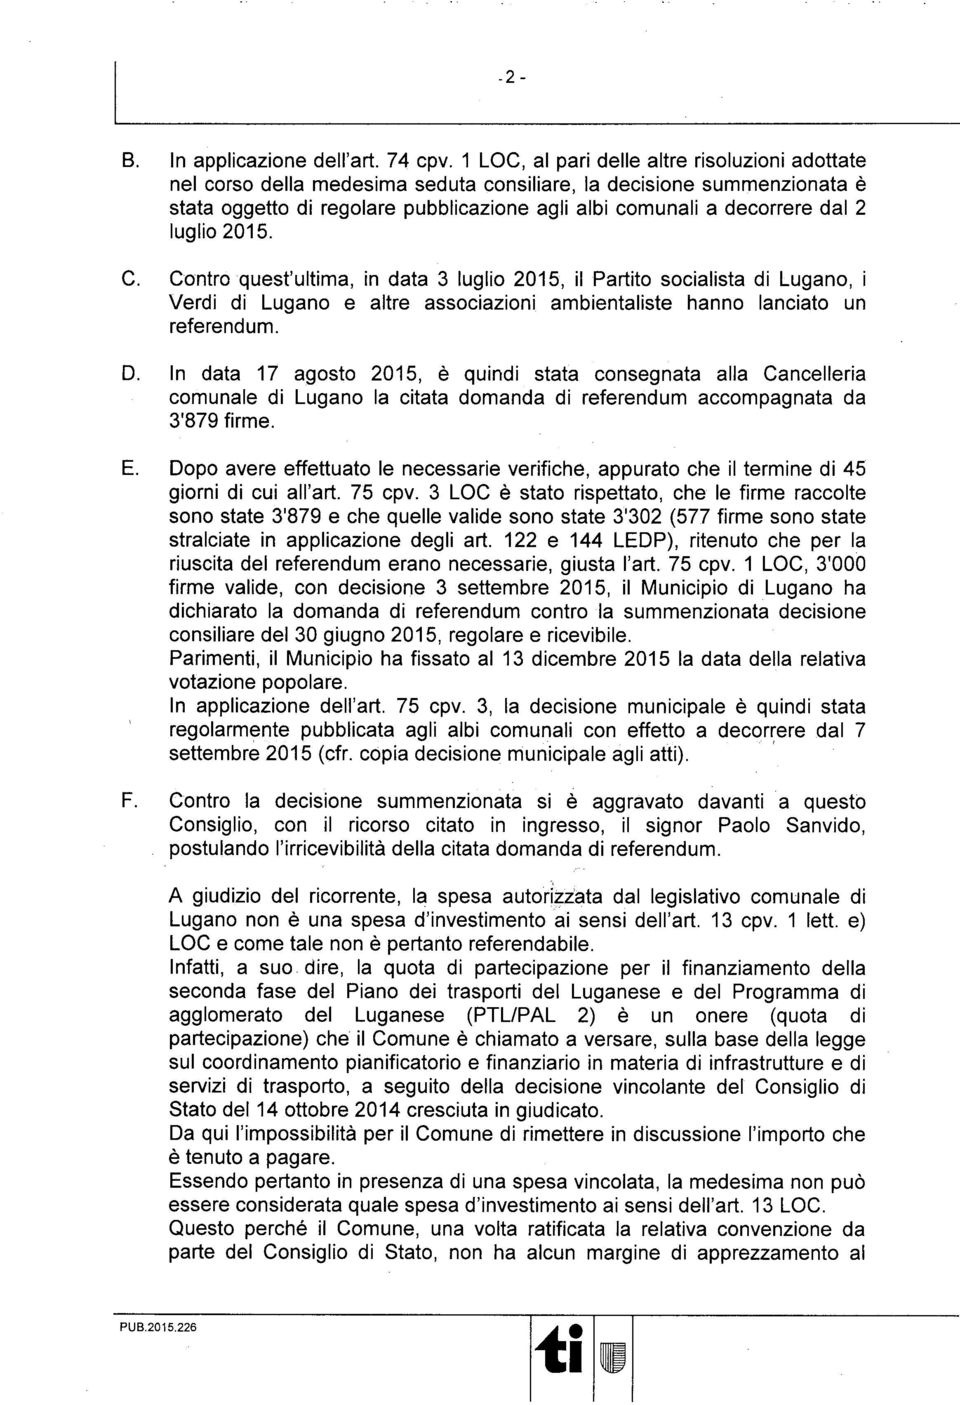 luglio 2015. C. Contro quest'ulma, in data 3 luglio 2015, il Parto socialista di Lugano, i Verdi di Lugano e altre associazioni ambientaliste hanno lanciato un referendum. D.